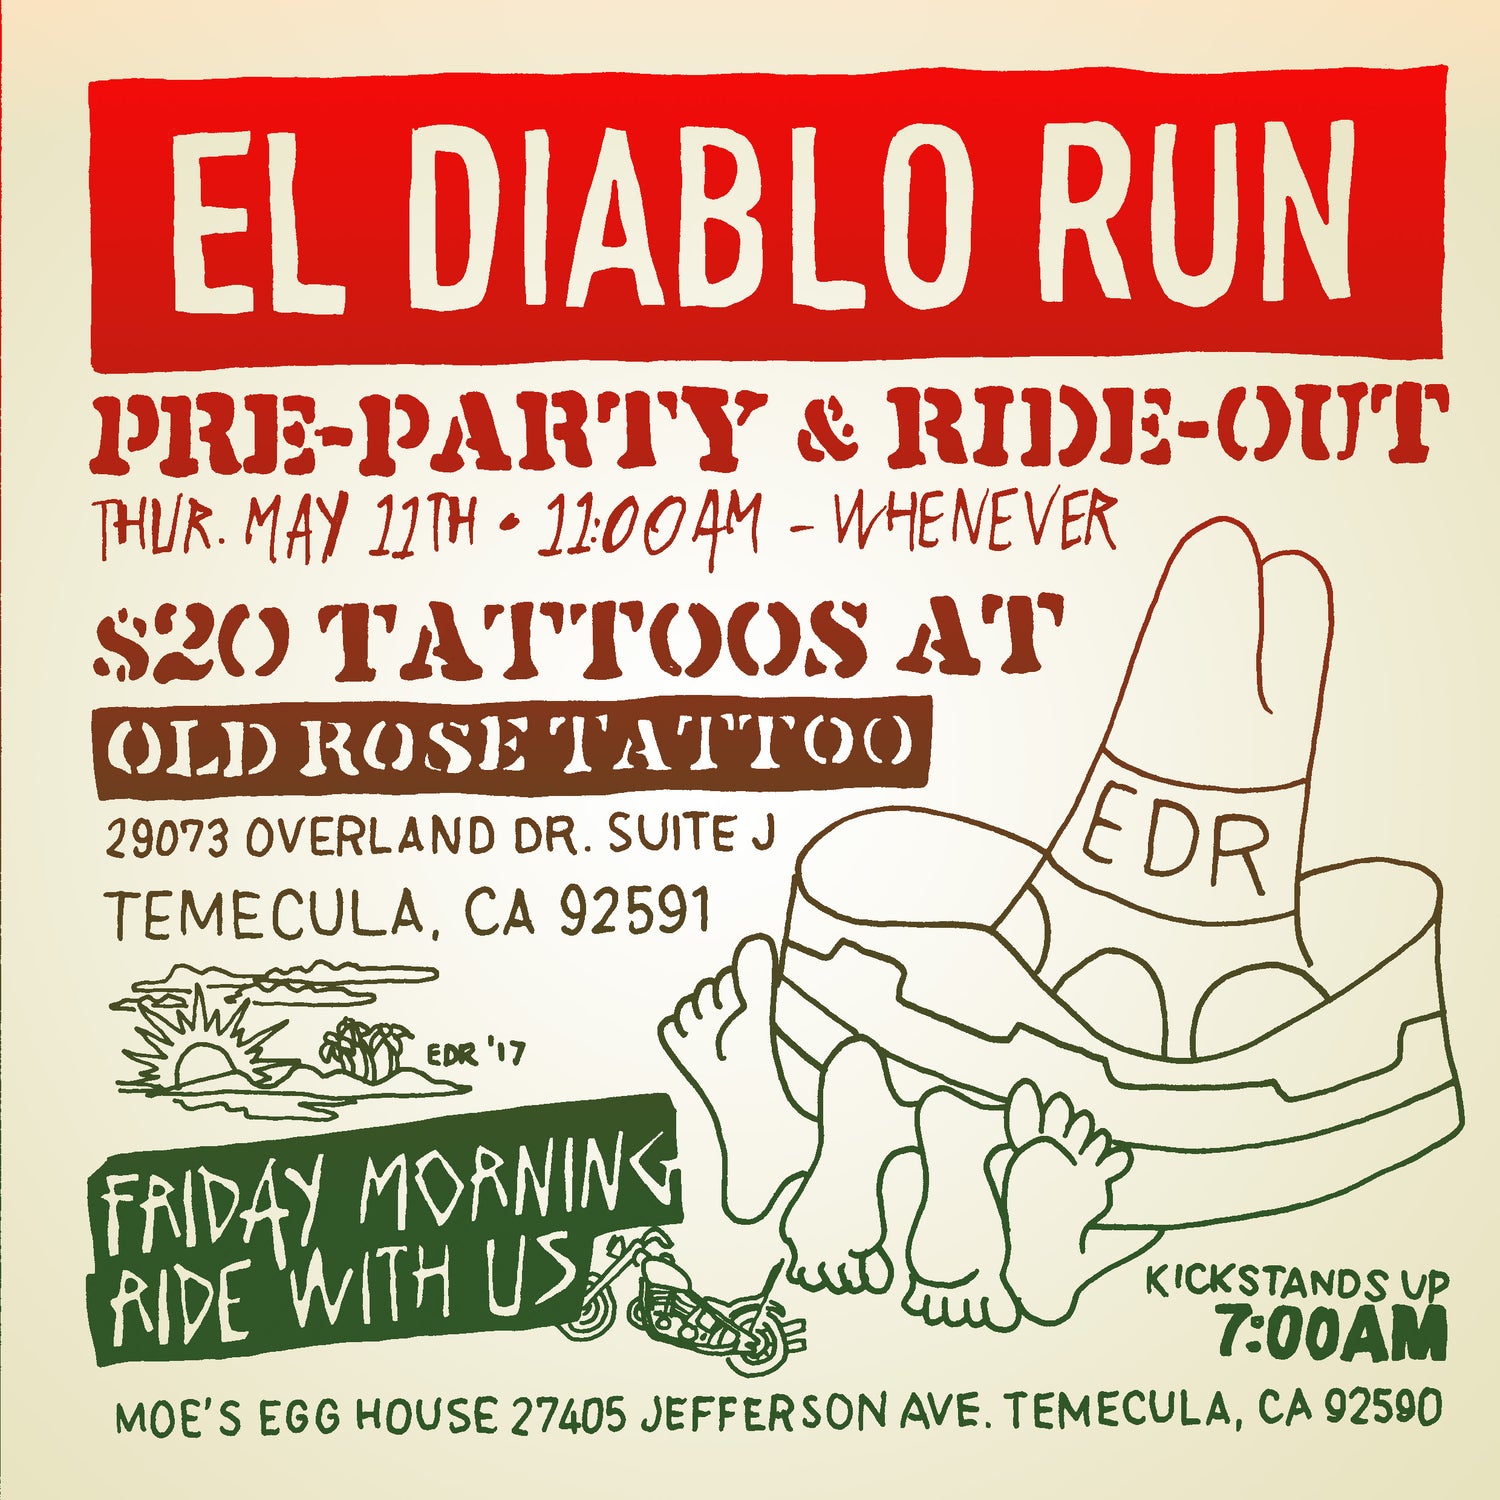 El Diablo Run 2017 Pre-Party & Ride Meet-Up